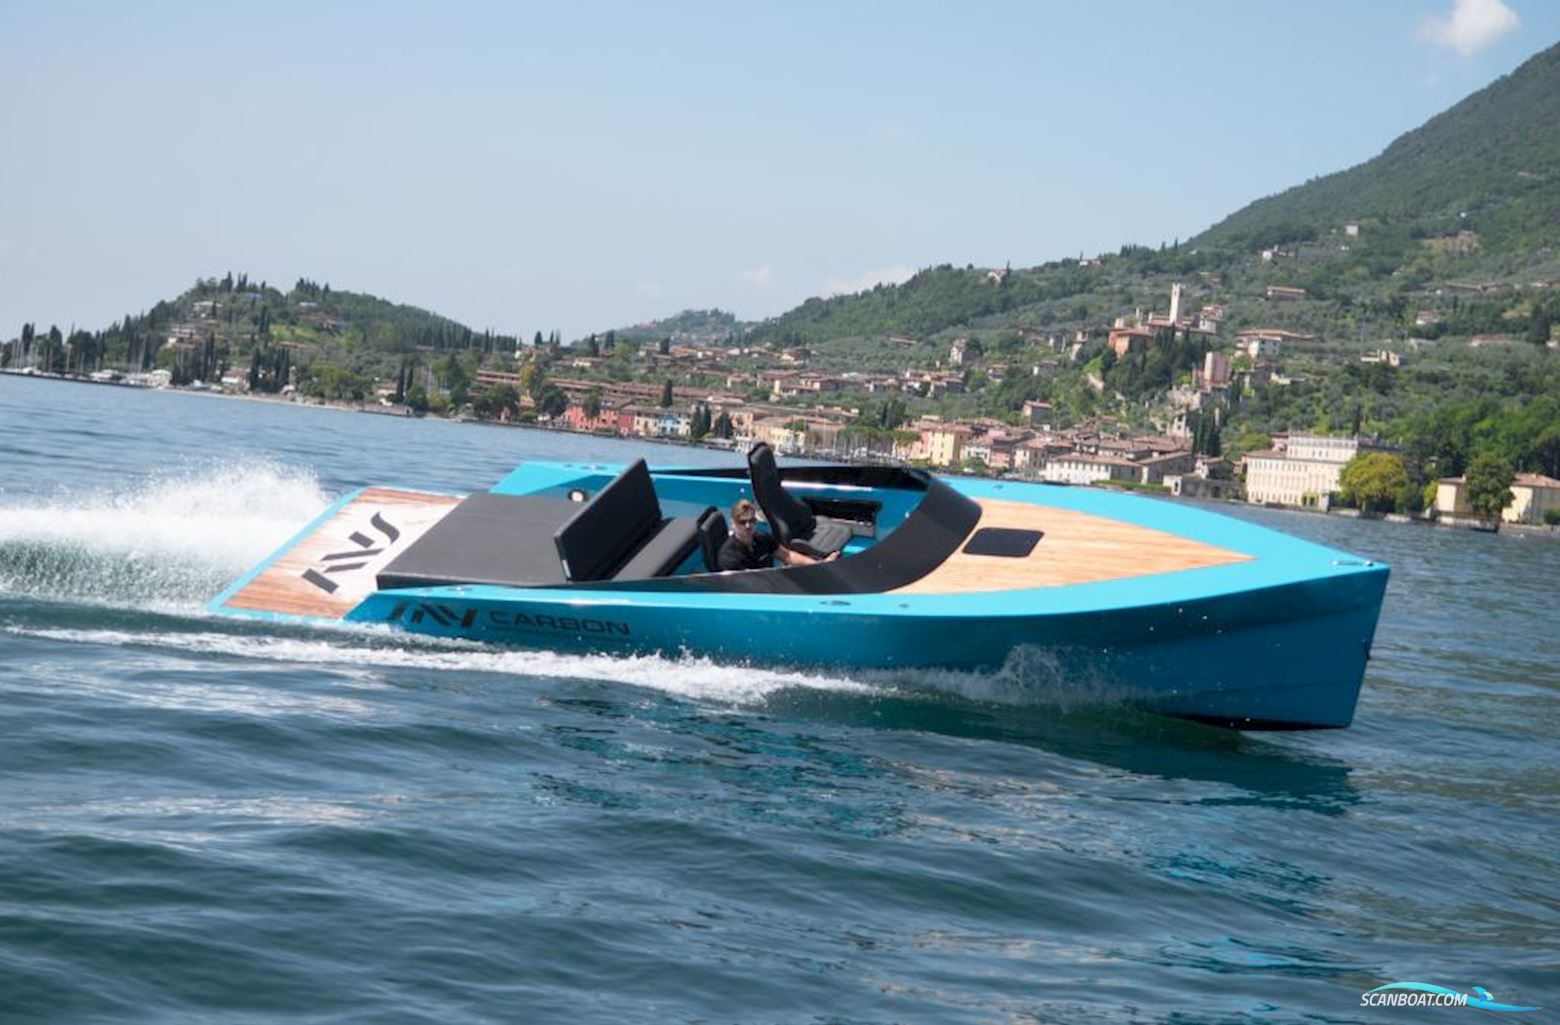 Say 29 -Verkauft- Motorbåd 2018, med Mercruiser  V8 6,2 Liter motor, Tyskland